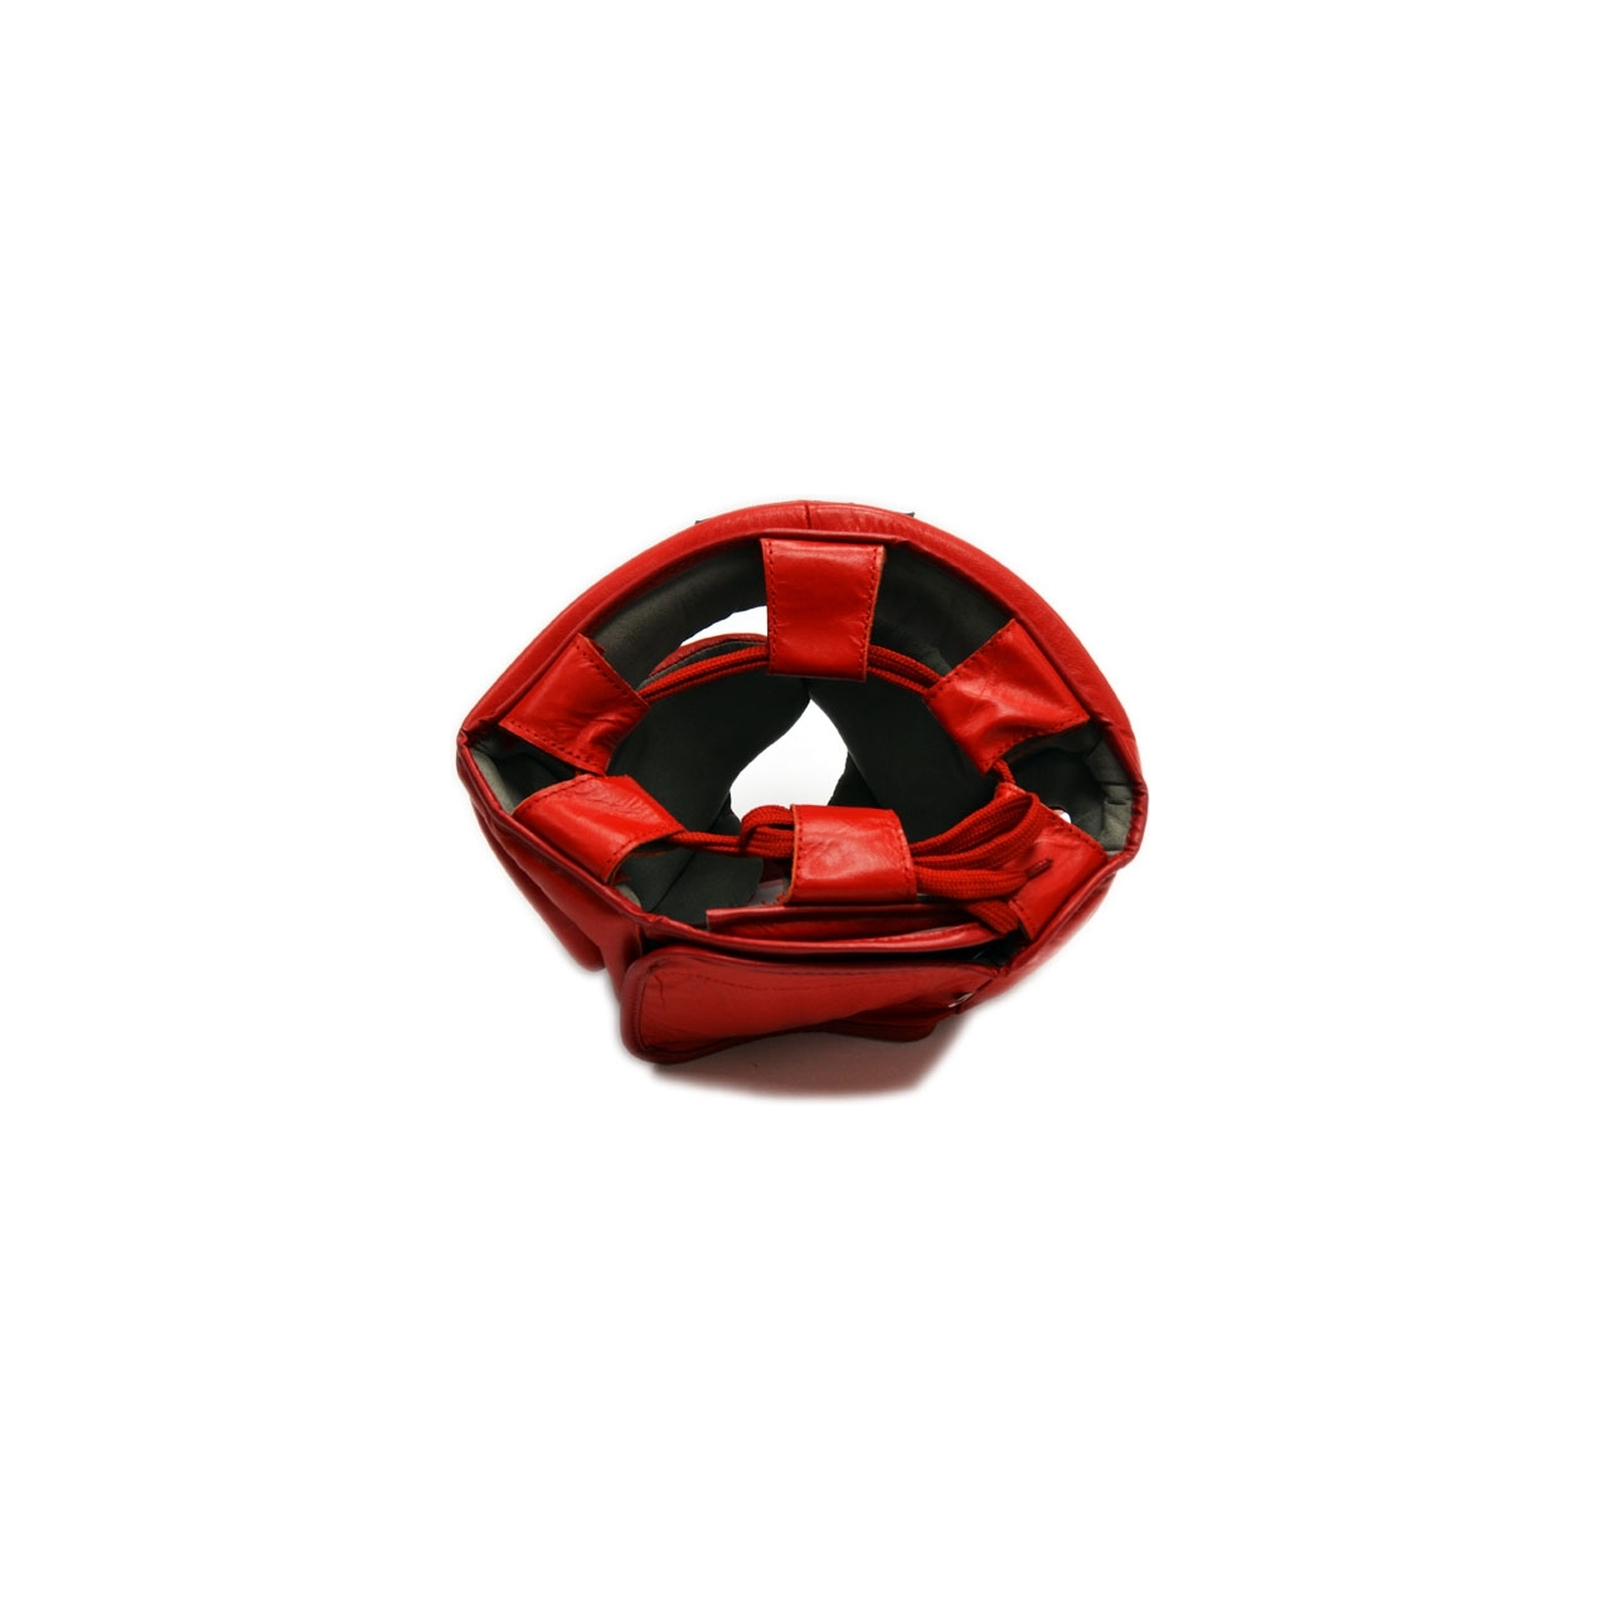 Боксерський шолом Thor 716 L ПУ-шкіра Червоний (716 (PU) RED L) зображення 3